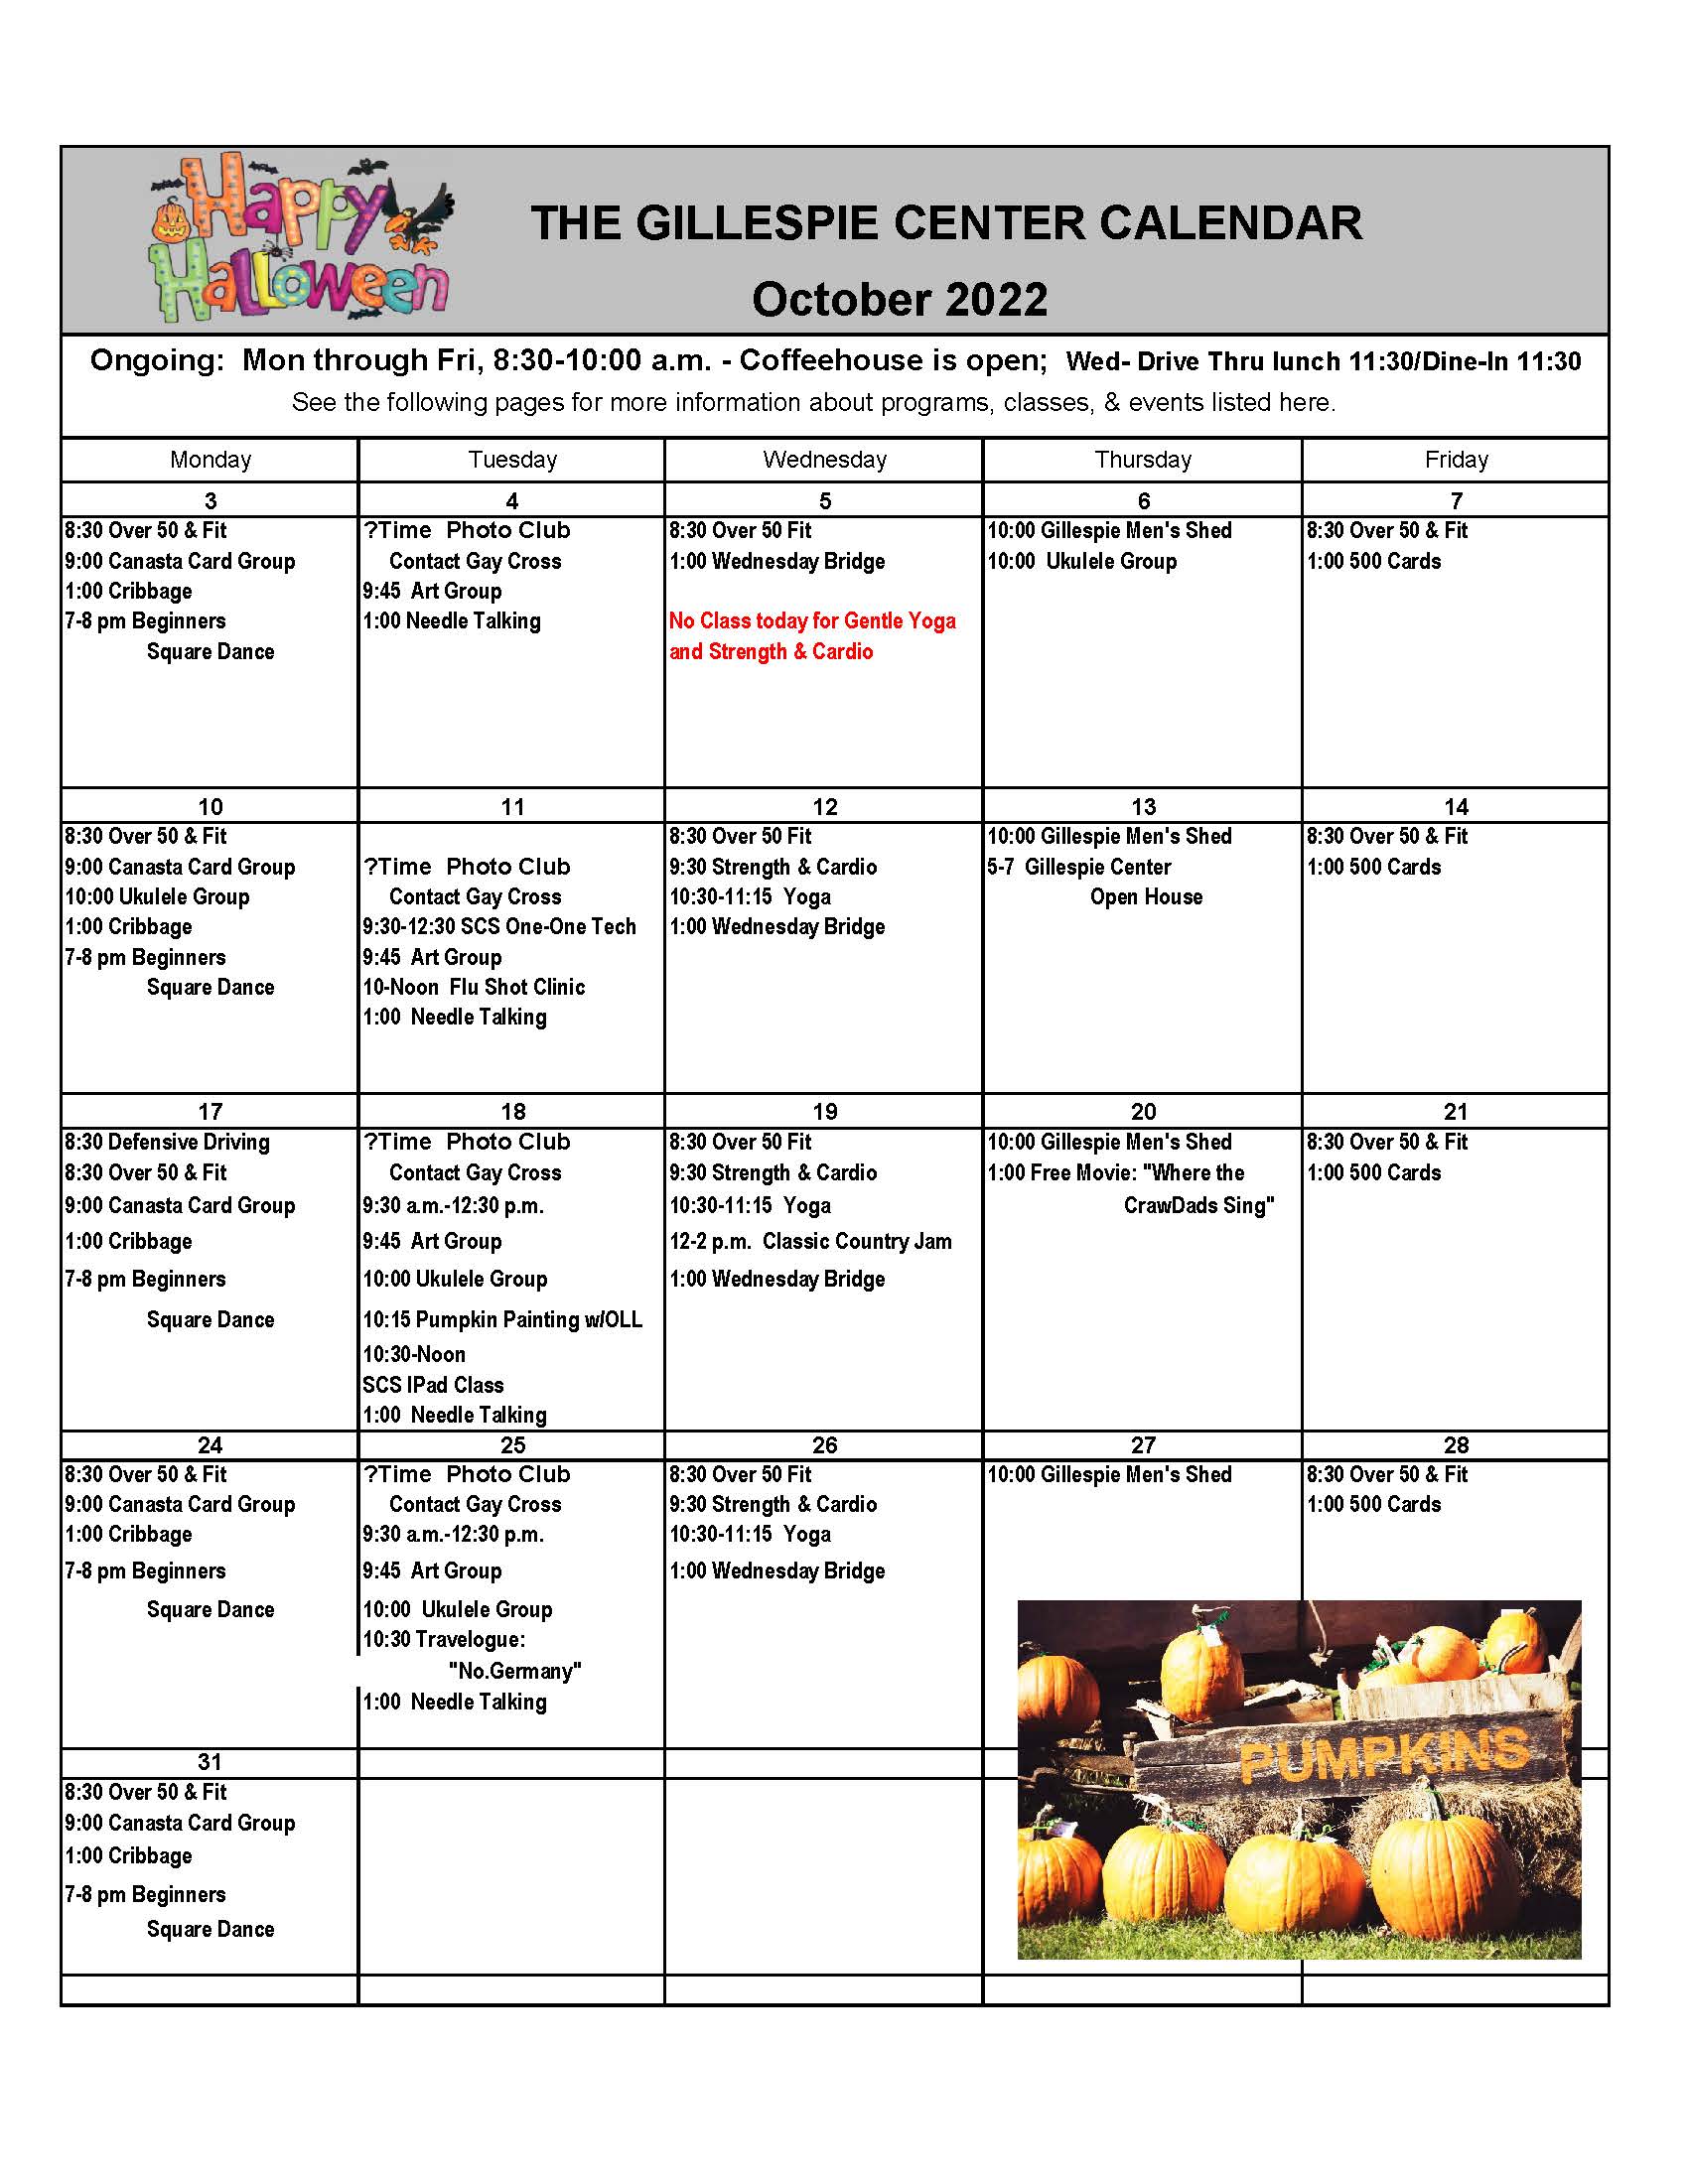 Calendar of Events Minnesota Senior Centers